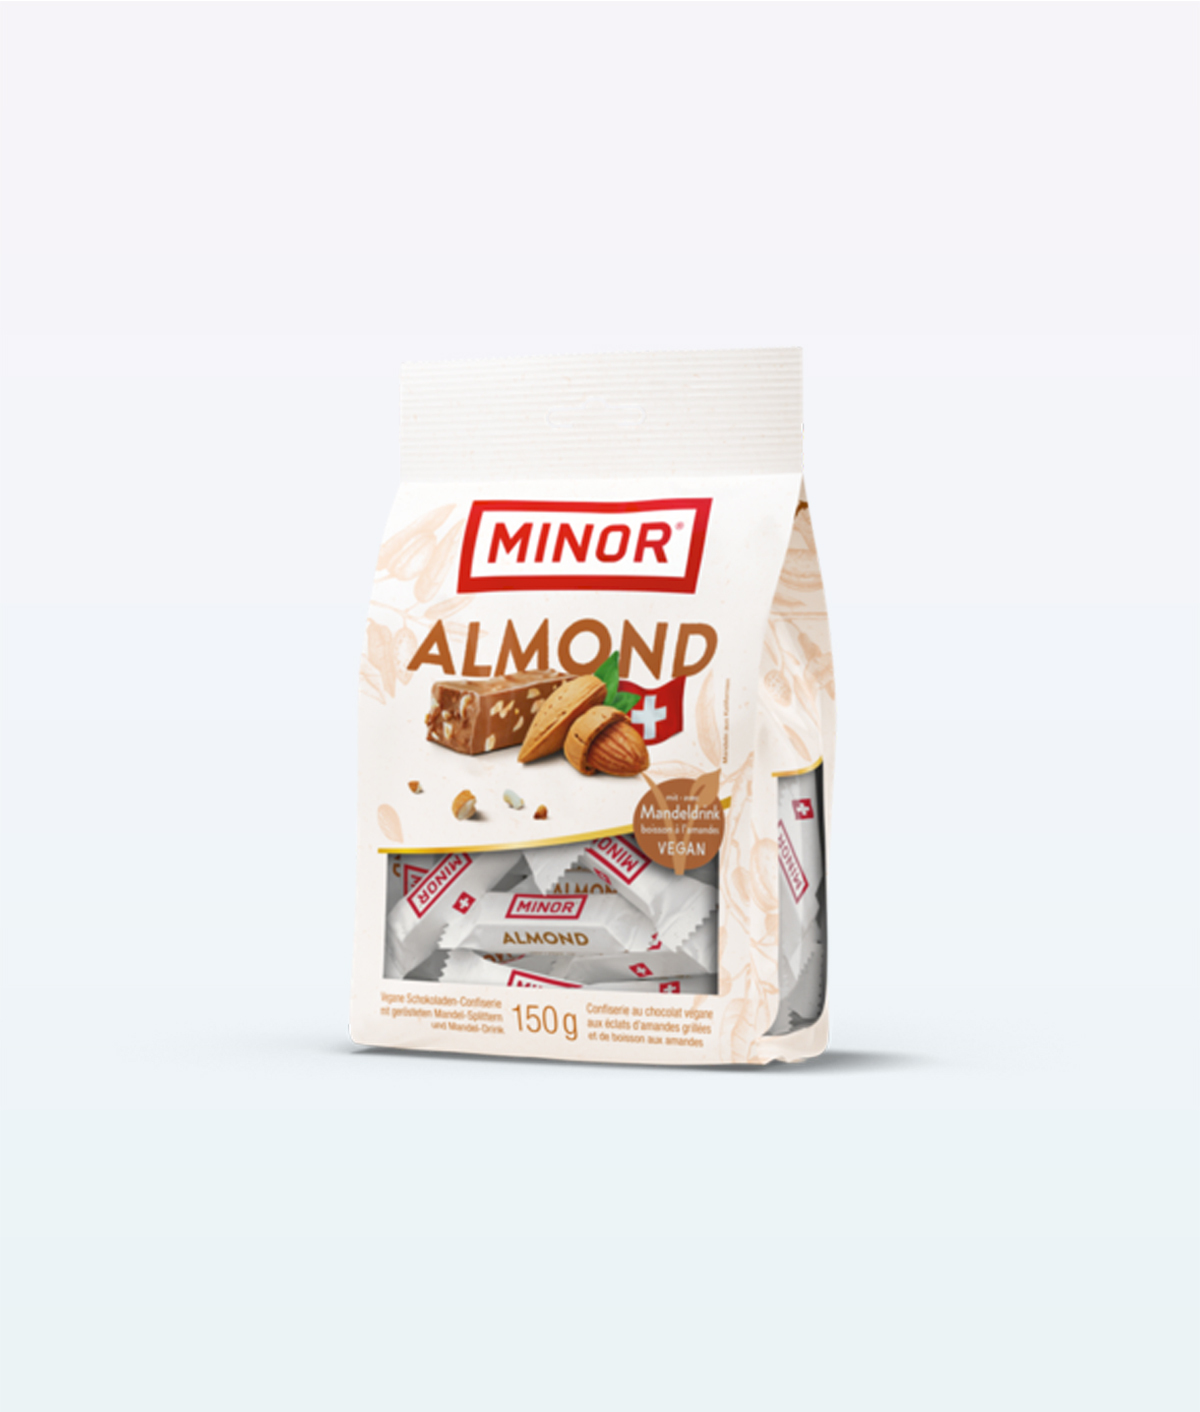 Minor Almond Chocolates Bag